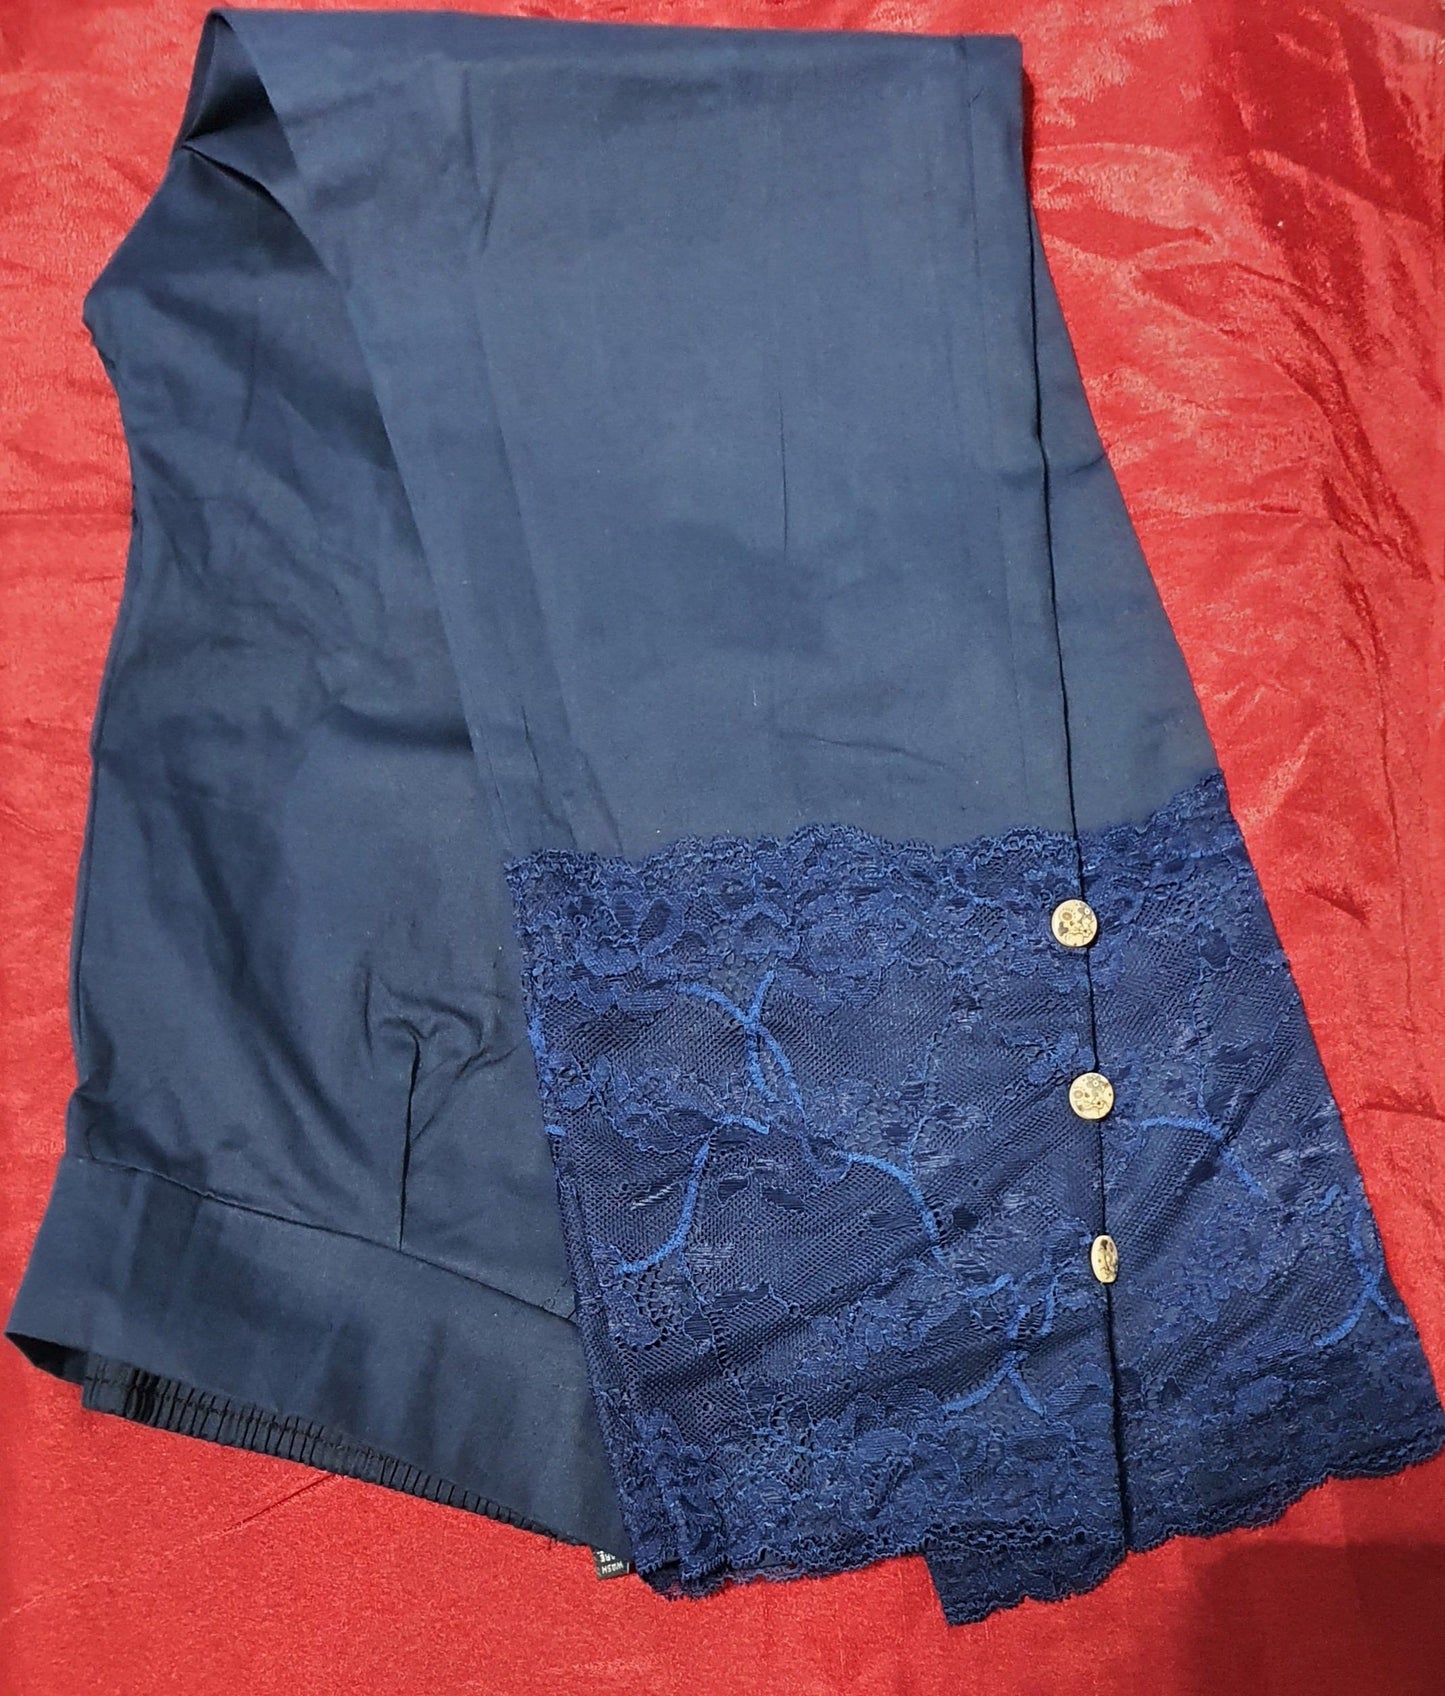 Designer Lace Cotton Lycra Pants in 5 colors Cotton Lycra Pants Shopindiapparels.com Navy Blue 